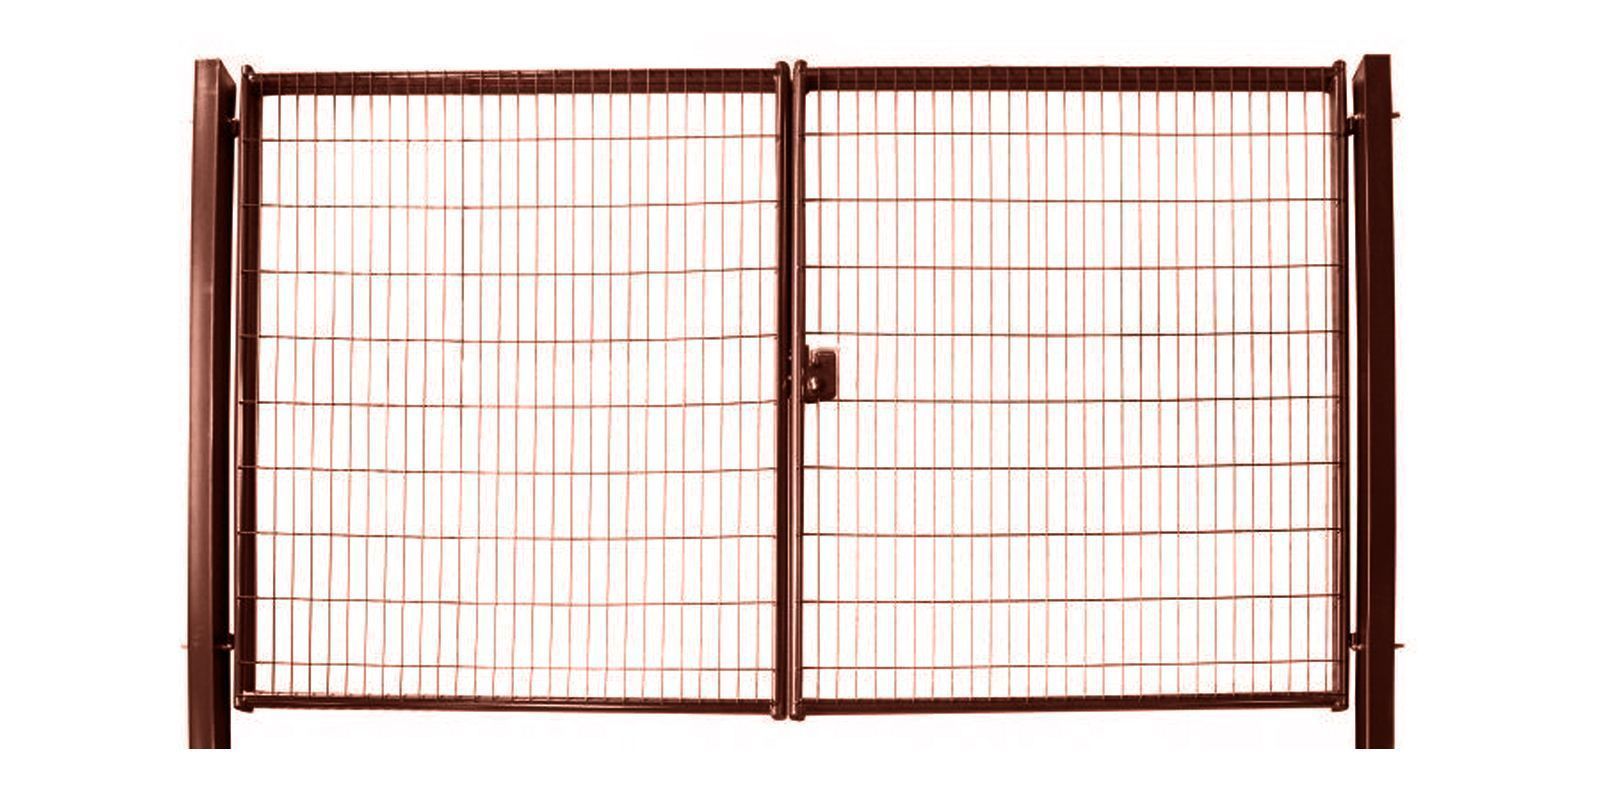 Ворота для панельного ограждения Medium, 1,73 м, ширина 4 м, изображение, фото | Сталь ТД